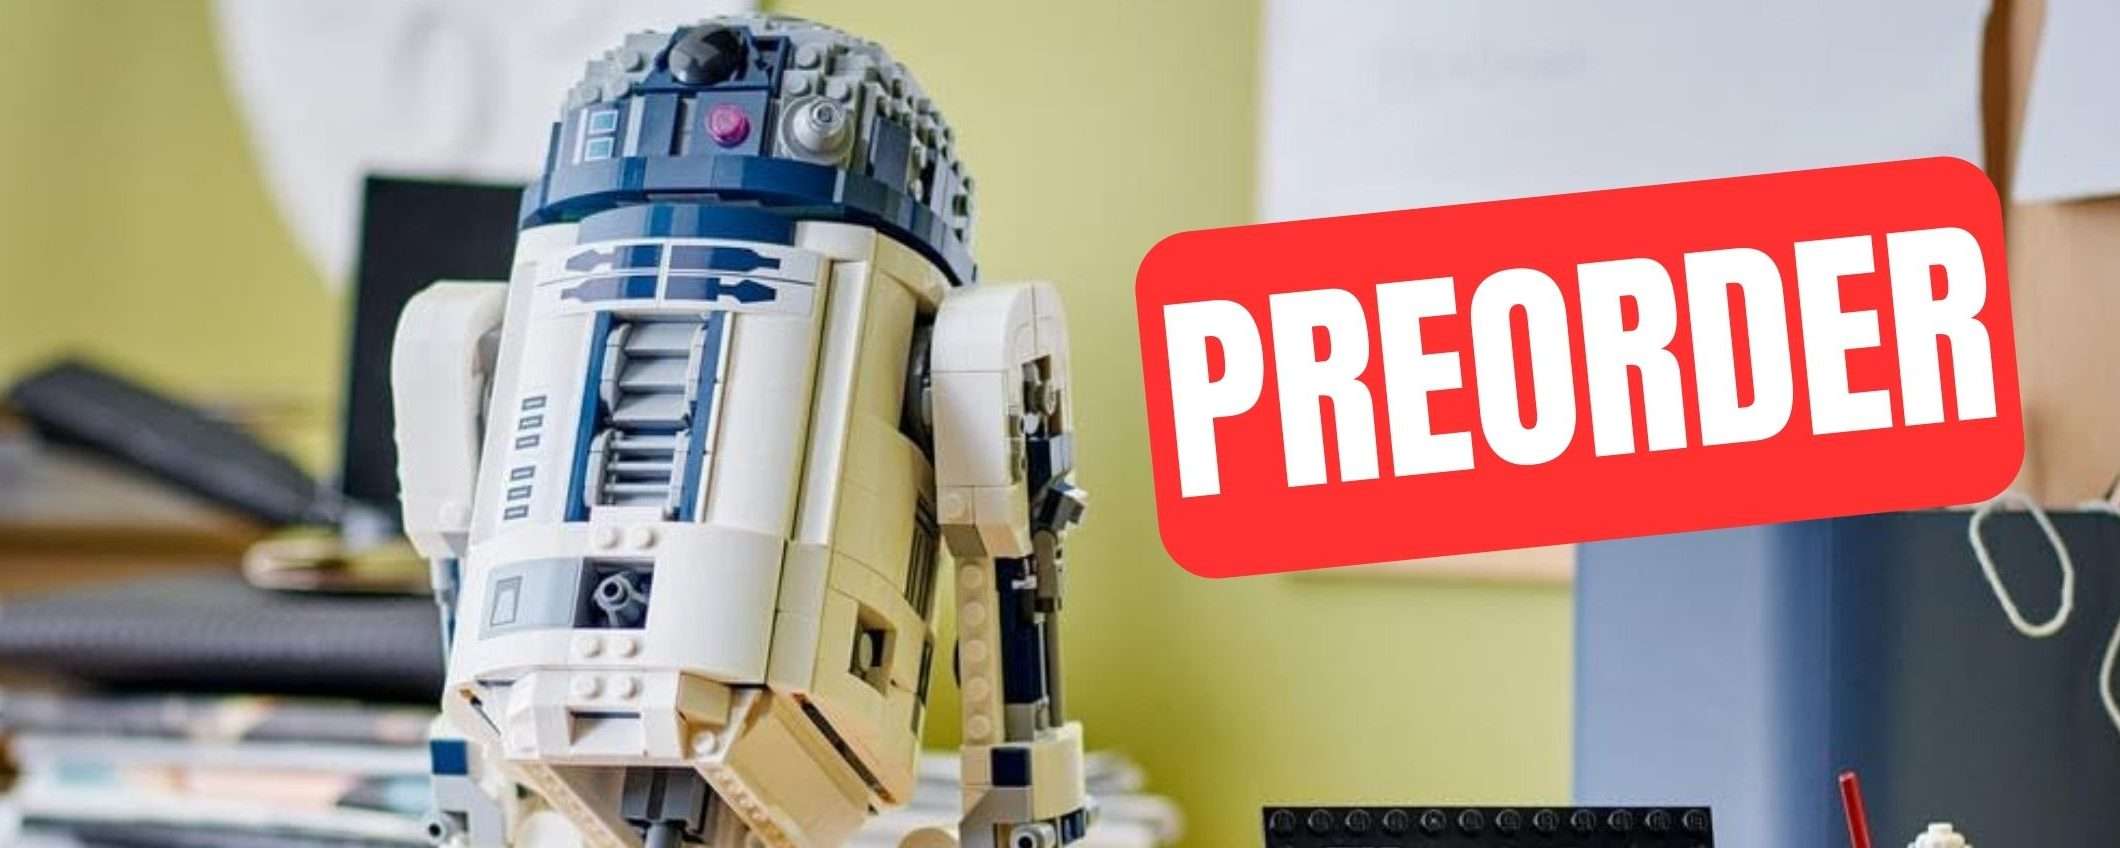 Prenota il nuovo LEGO R2-D2 su Amazon: è semplicemente magnifico